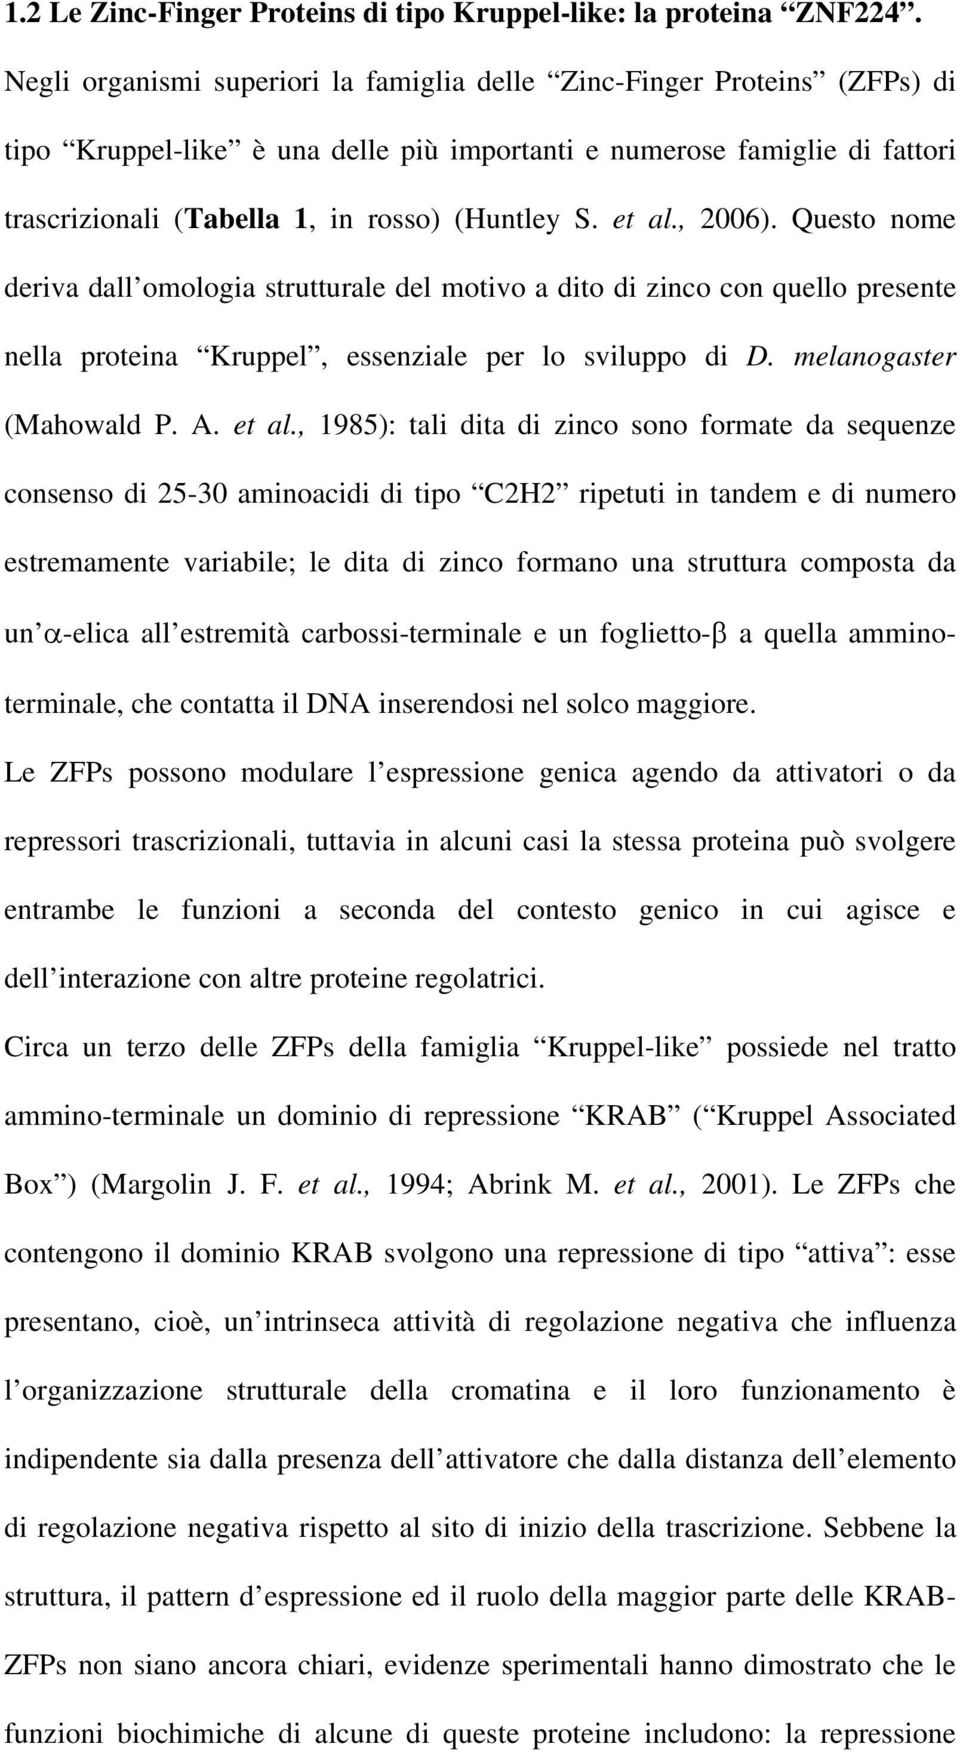 et al., 2006). Questo nome deriva dall omologia strutturale del motivo a dito di zinco con quello presente nella proteina Kruppel, essenziale per lo sviluppo di D. melanogaster (Mahowald P. A. et al.